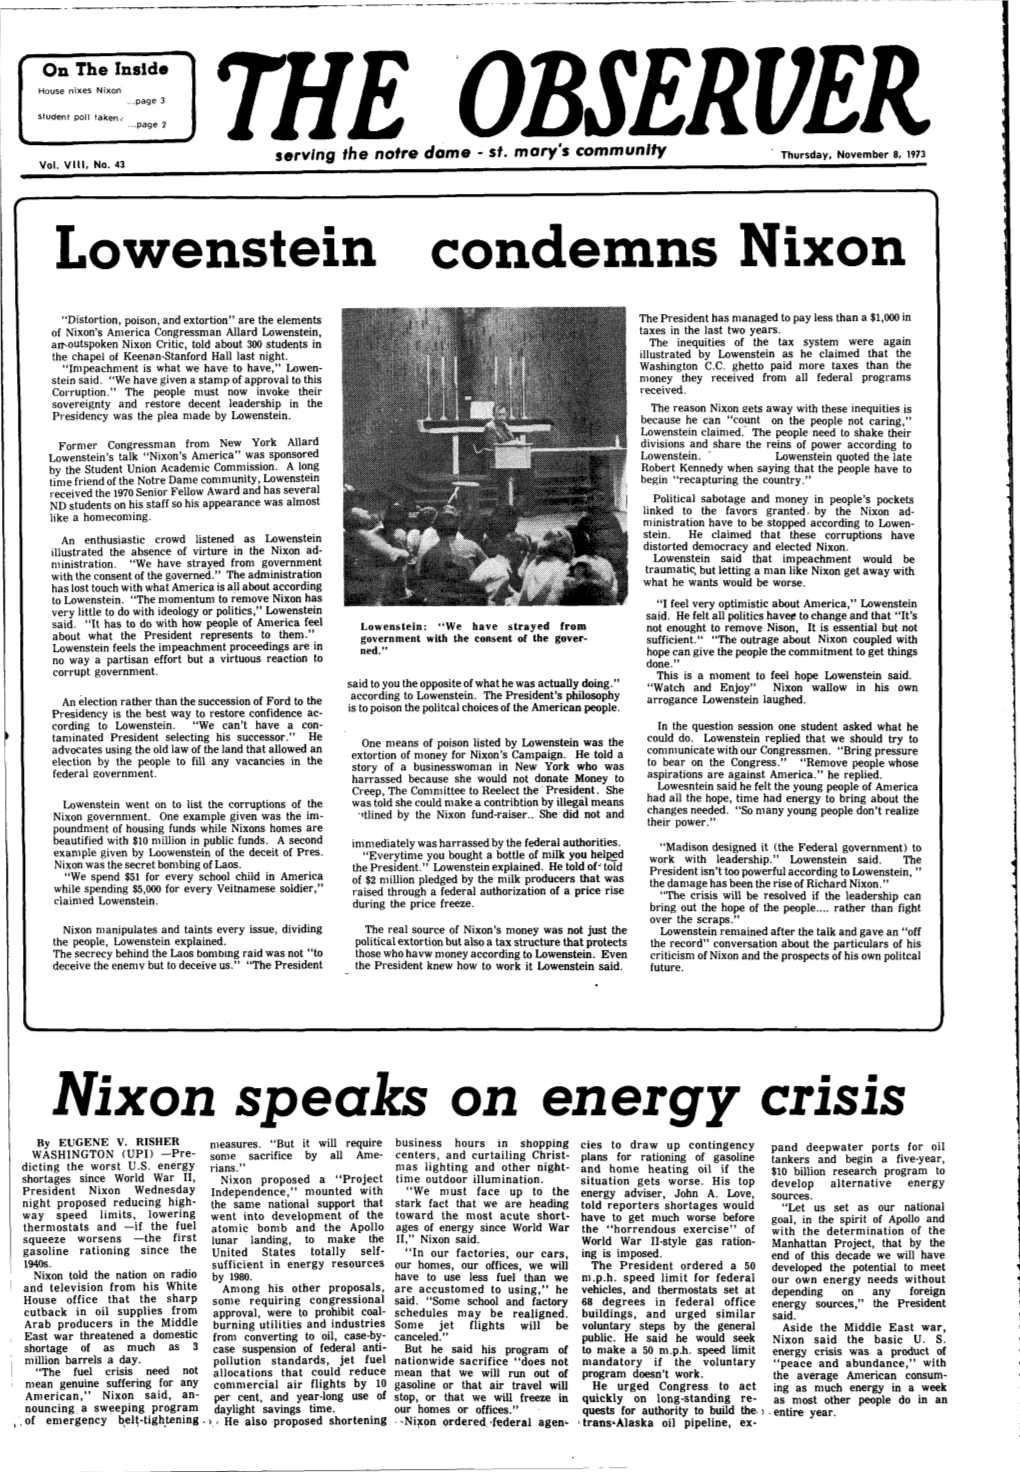 Nixon Speaks on Energy Crisis by EUGENE V